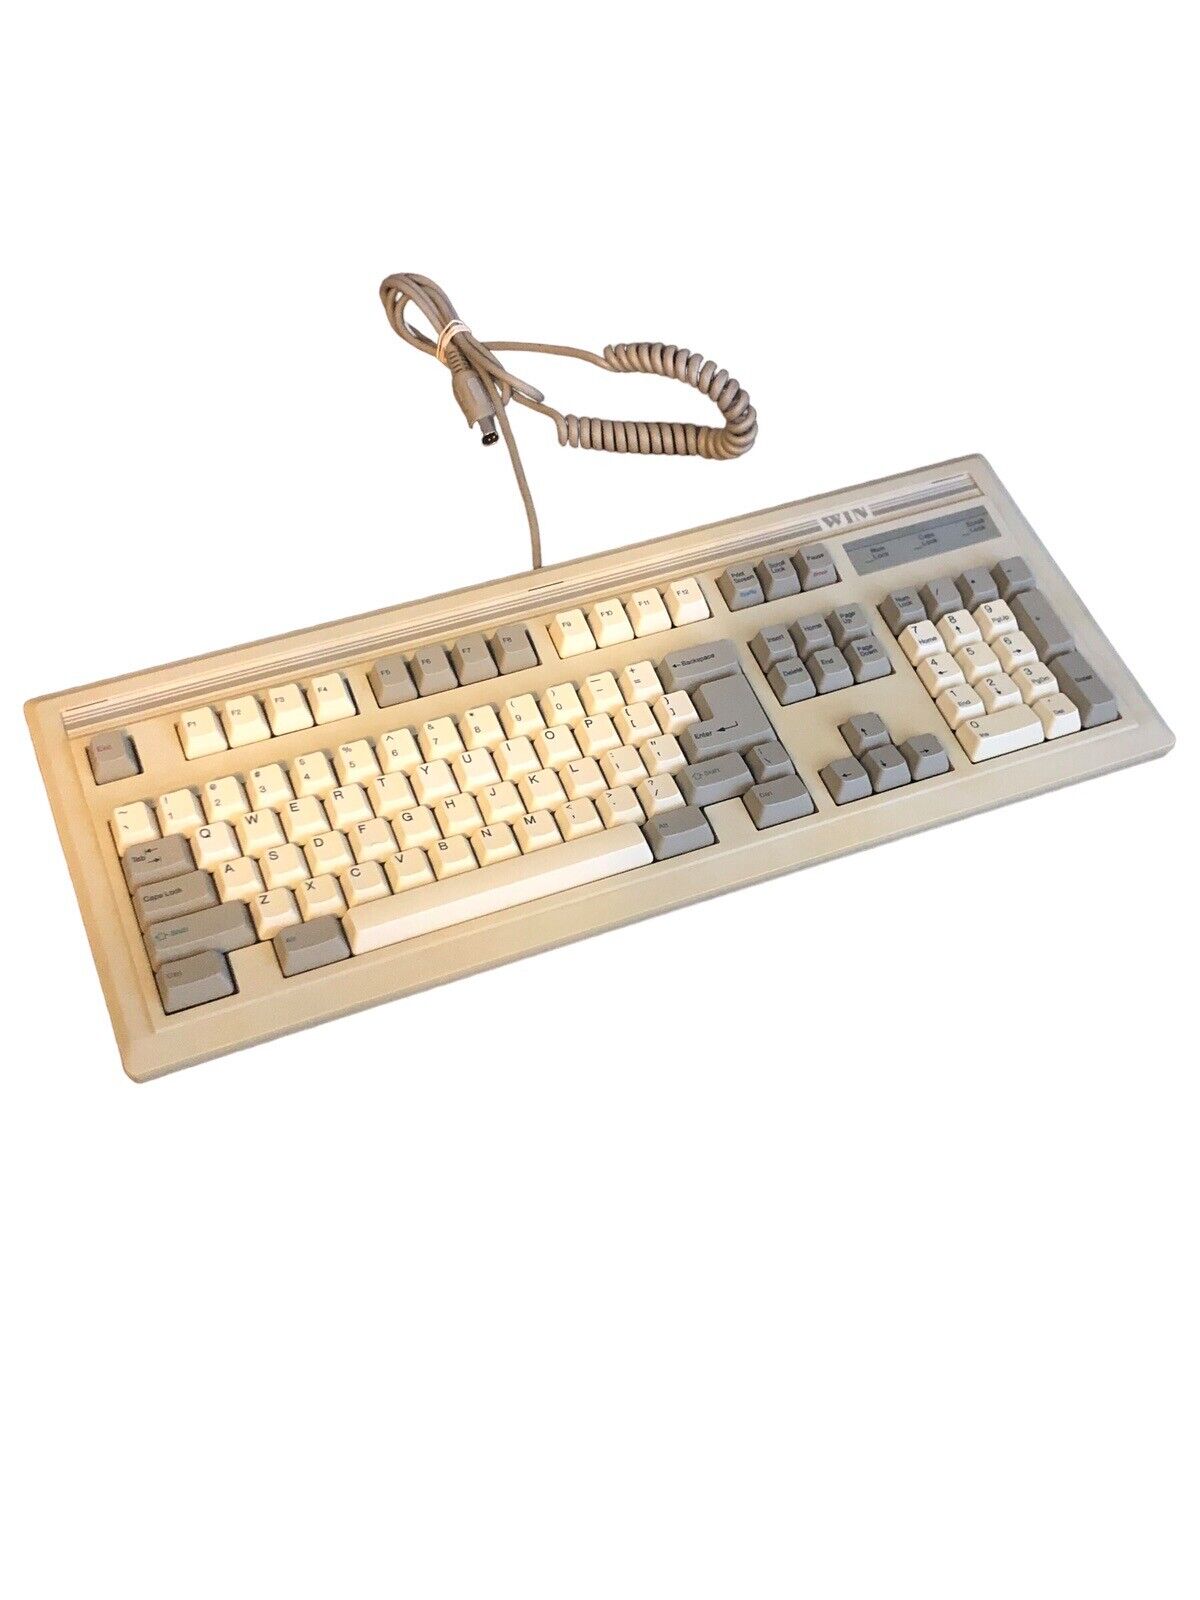 VINTAGE LITE-ON SK-0002-1U  Vintage IBM Compatible Keyboard